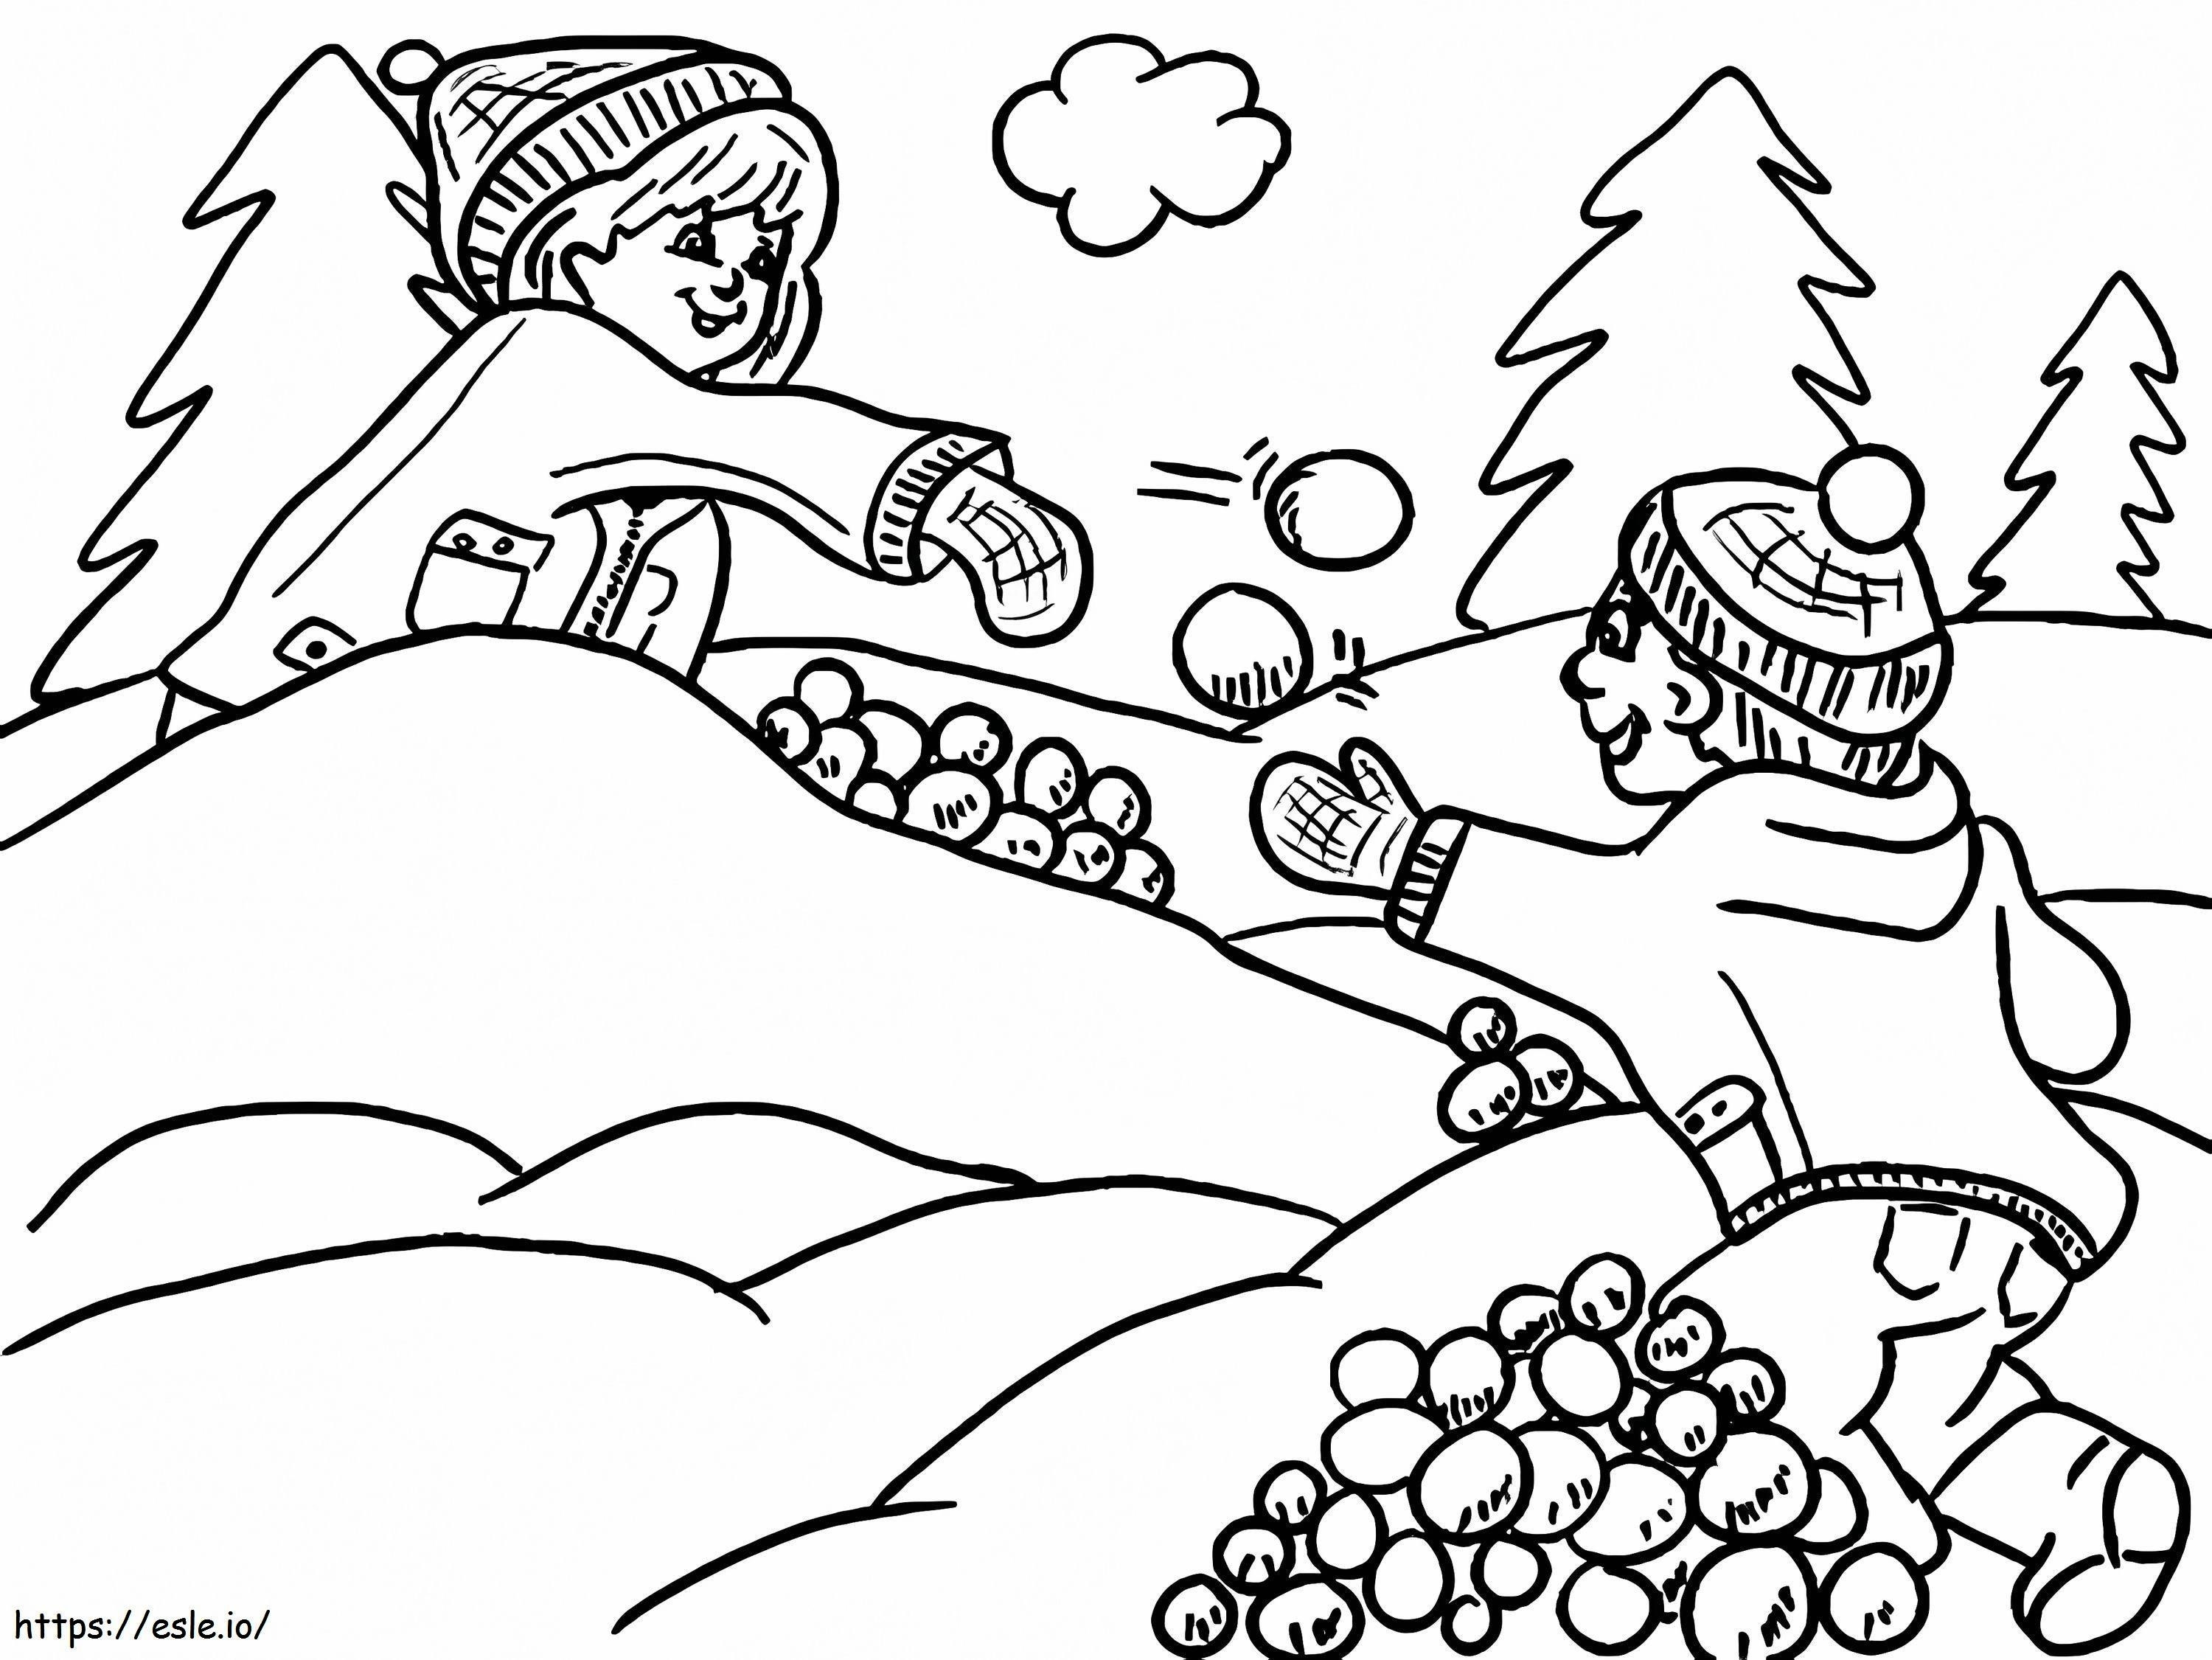 Coloriage Combat de boules de neige imprimable gratuitement à imprimer dessin